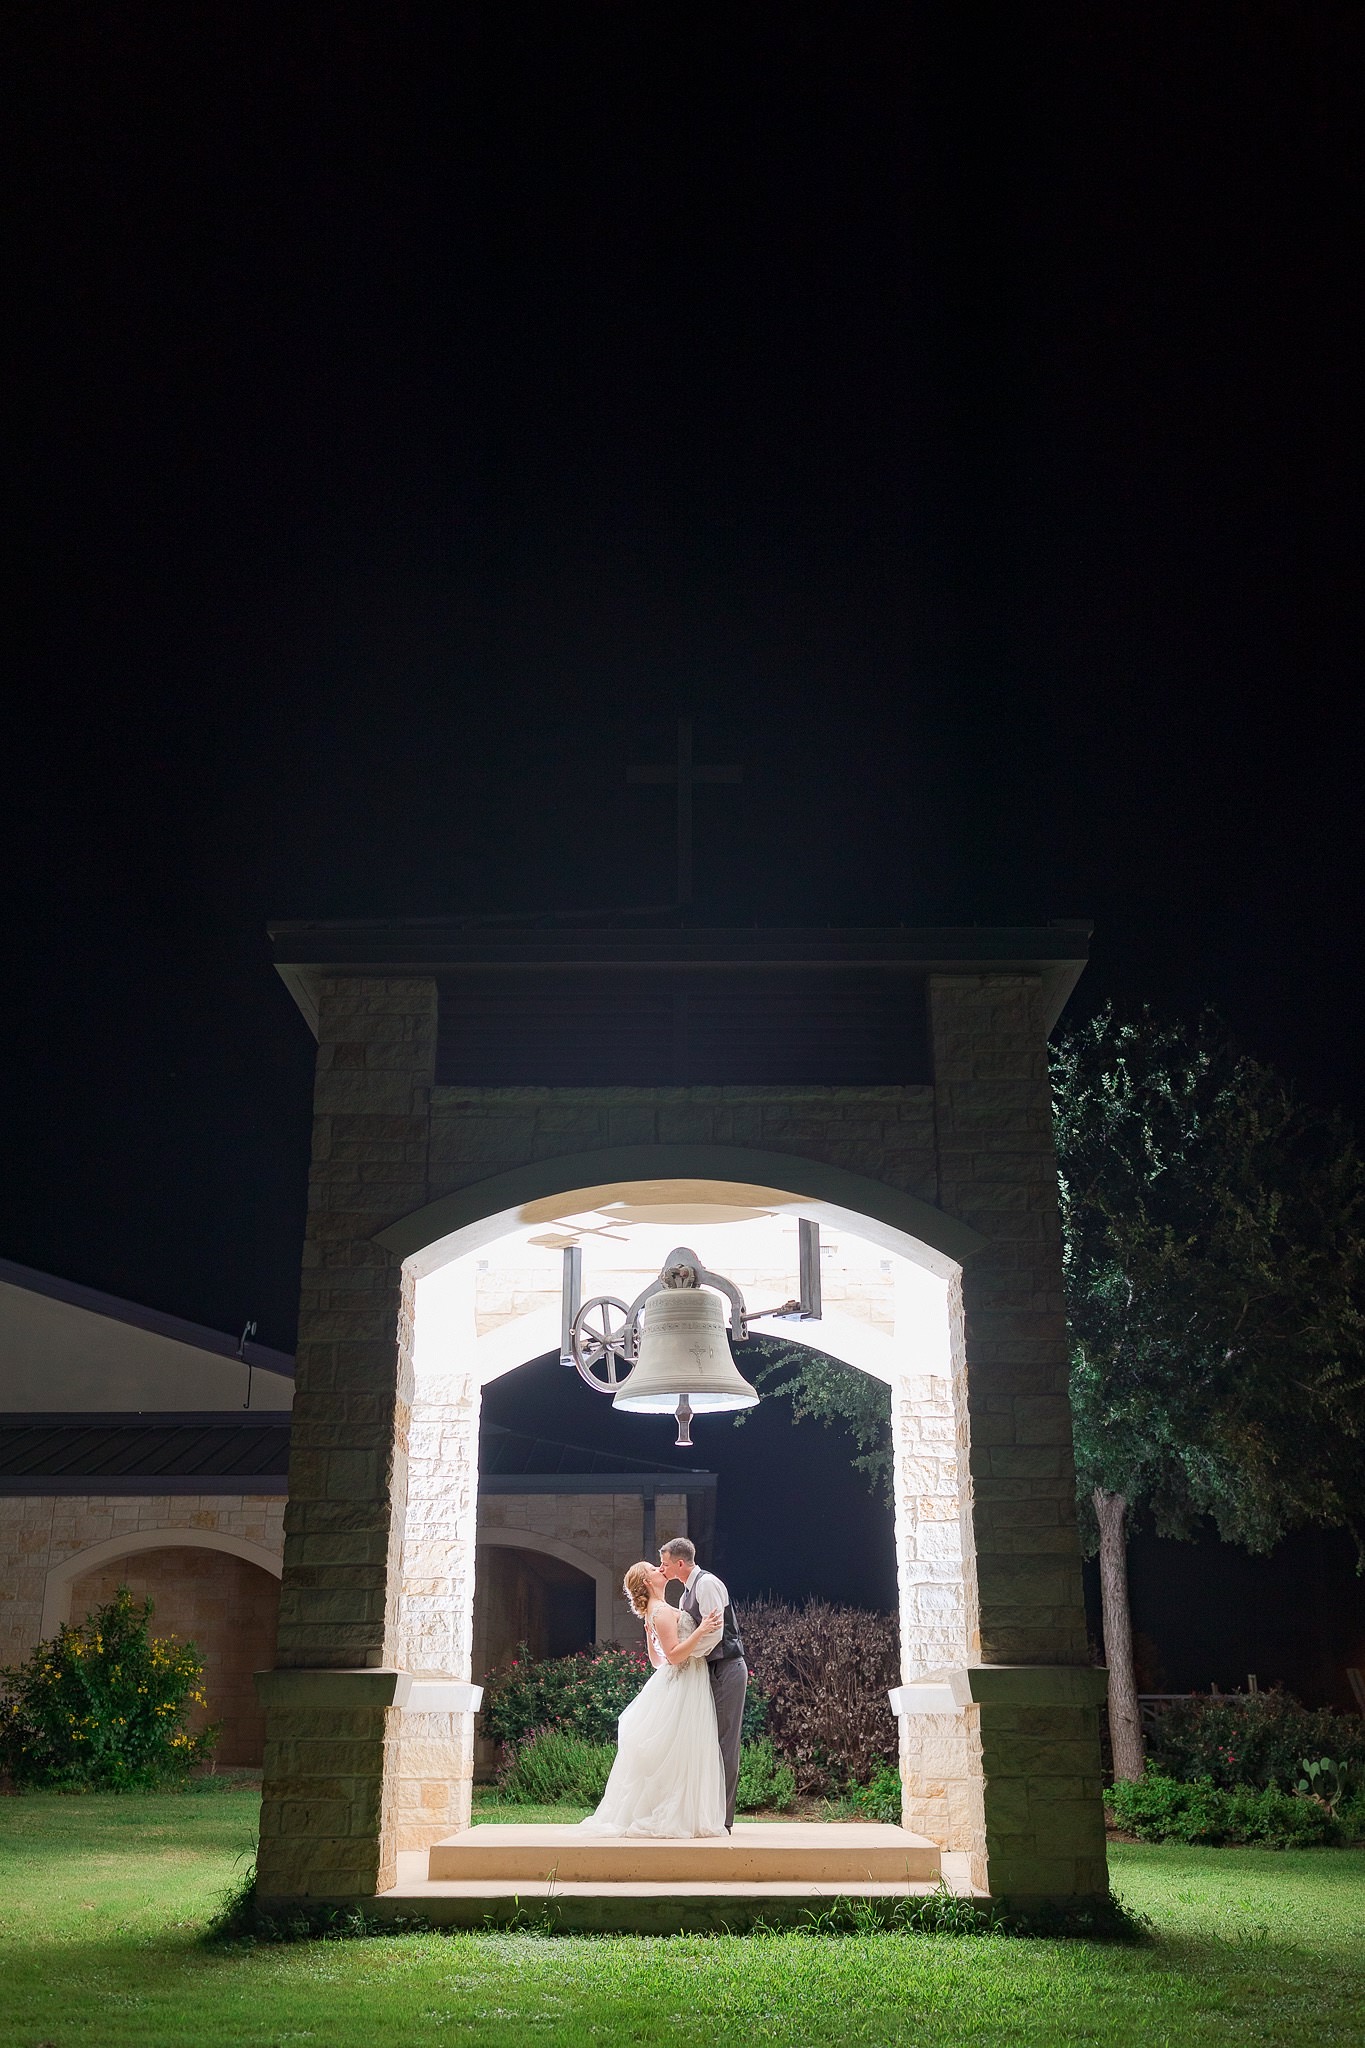 A Wedding at St. Jerome Catholic Church in Adkins, TX by Dawn Elizabeth Studios, San Antonio Wedding Photographer